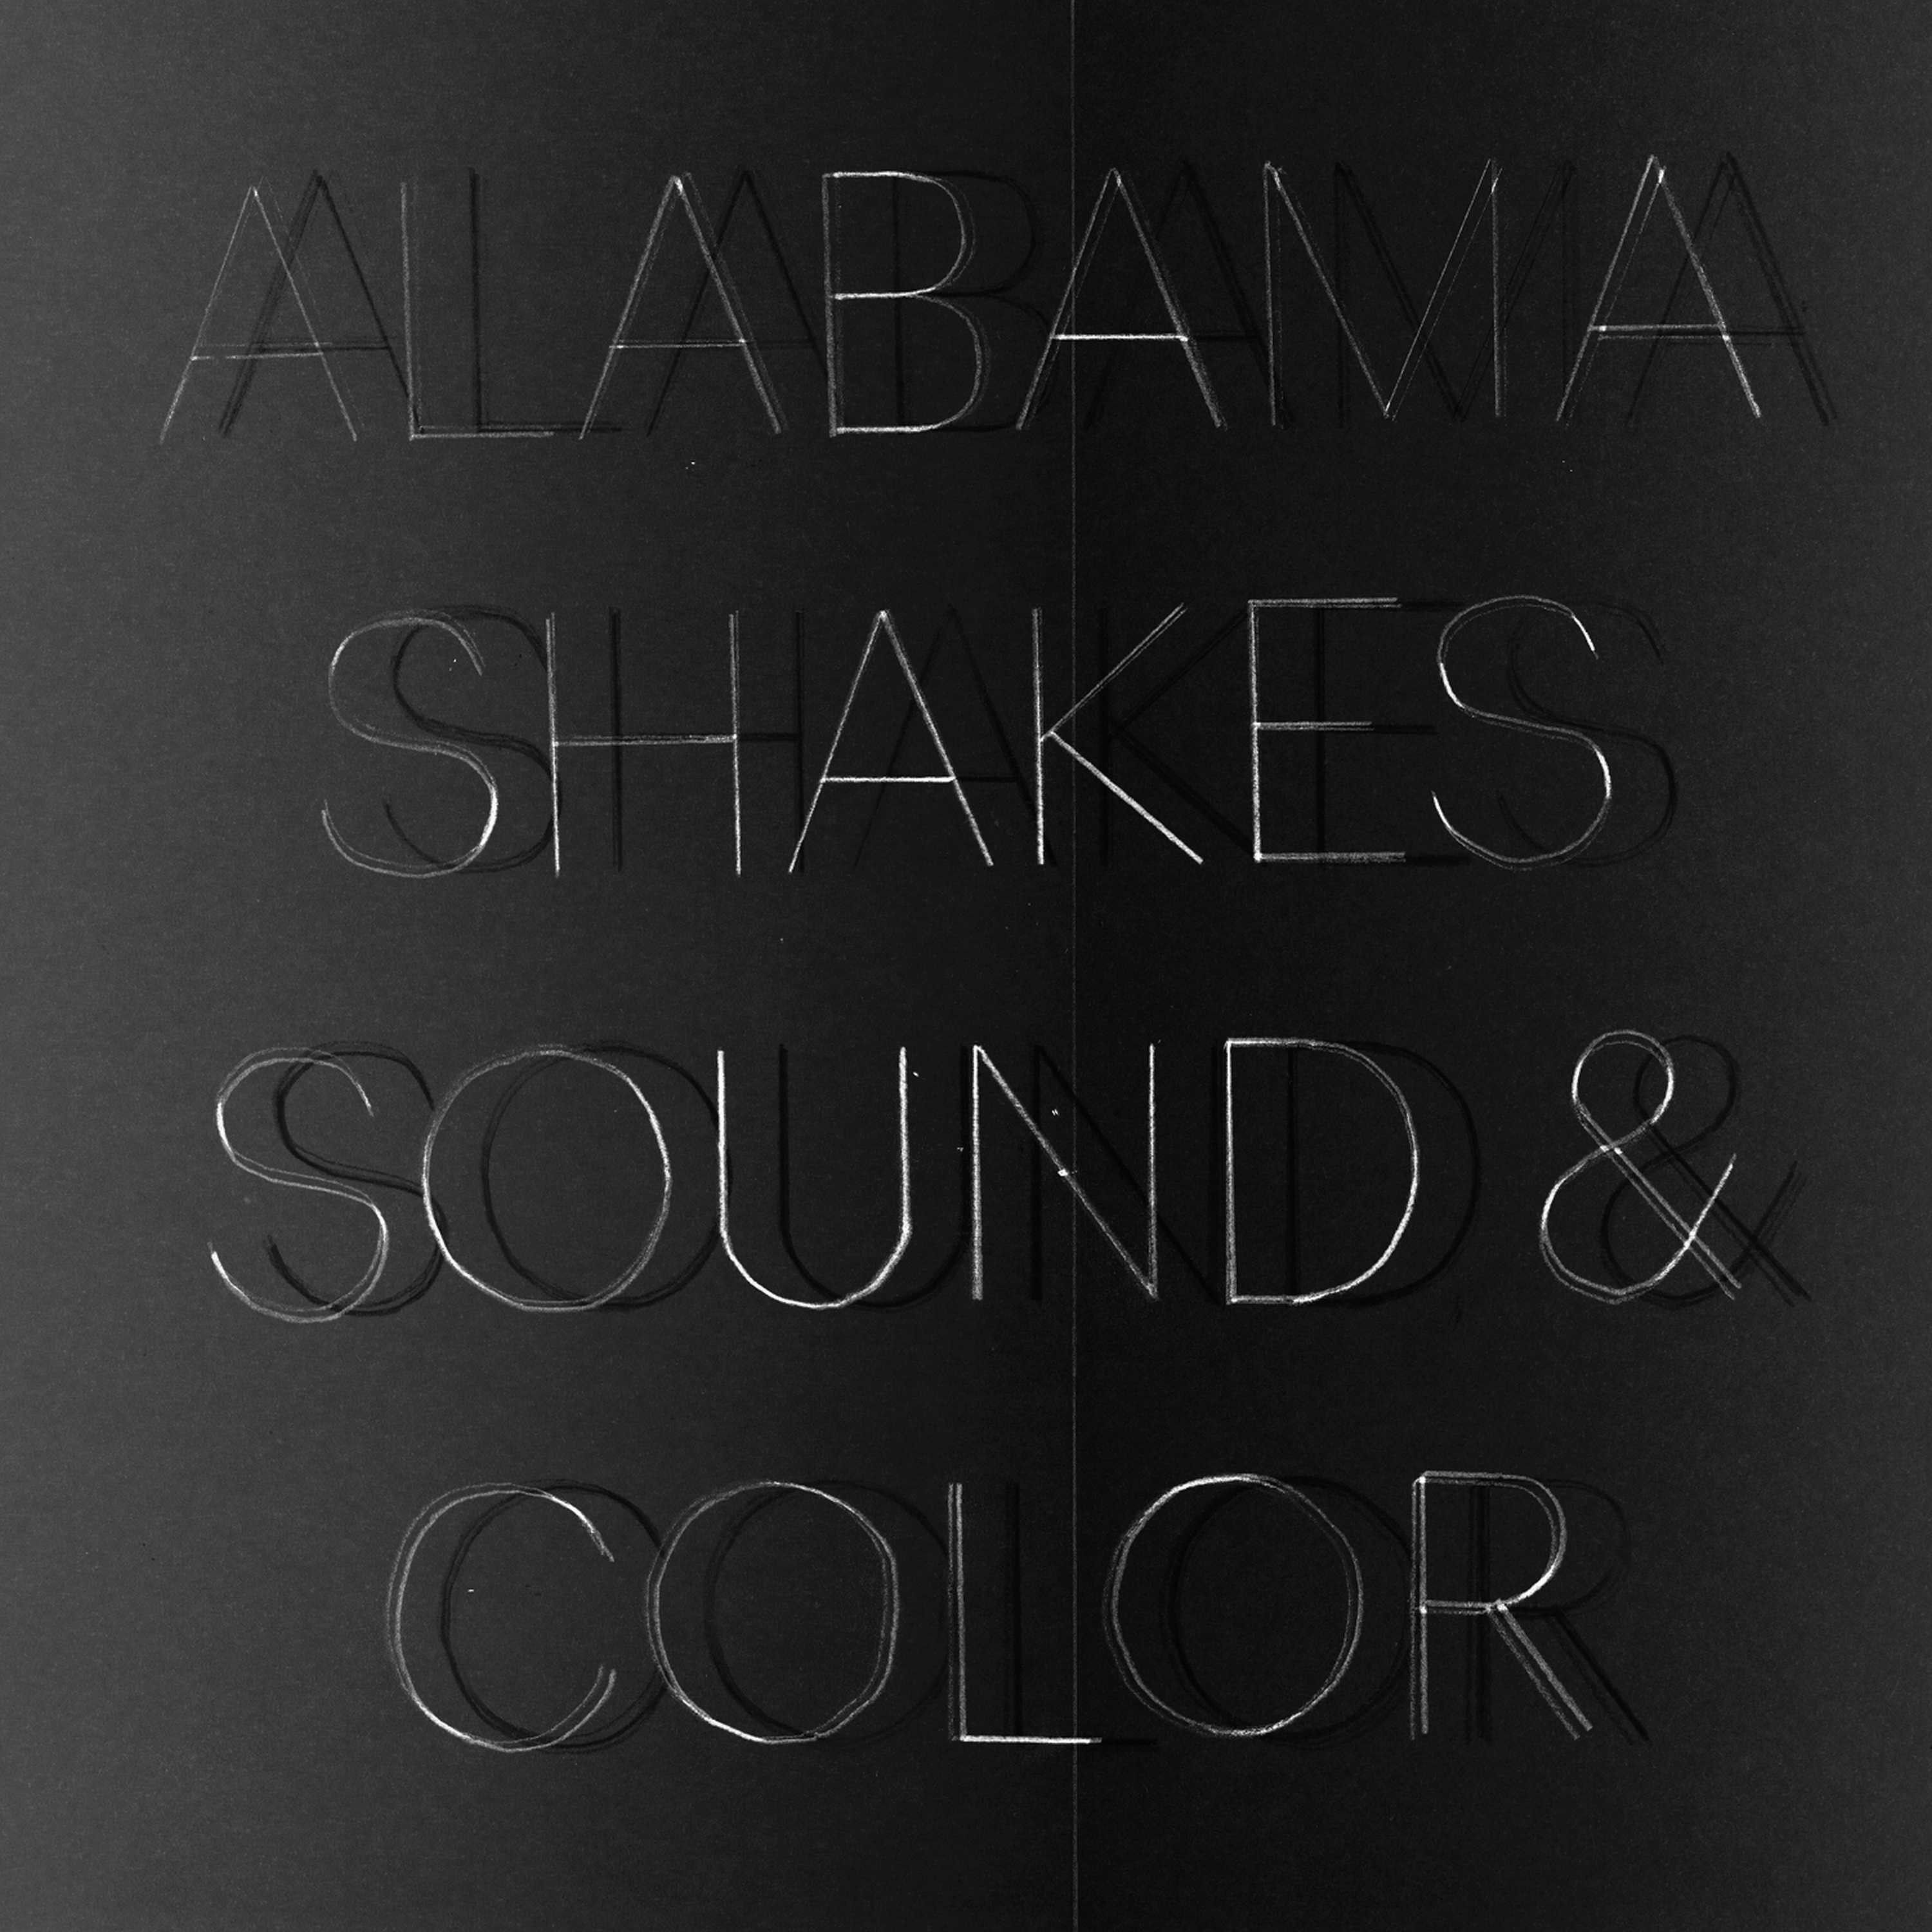 Alabama Shakes - Sound & Color 2XLP